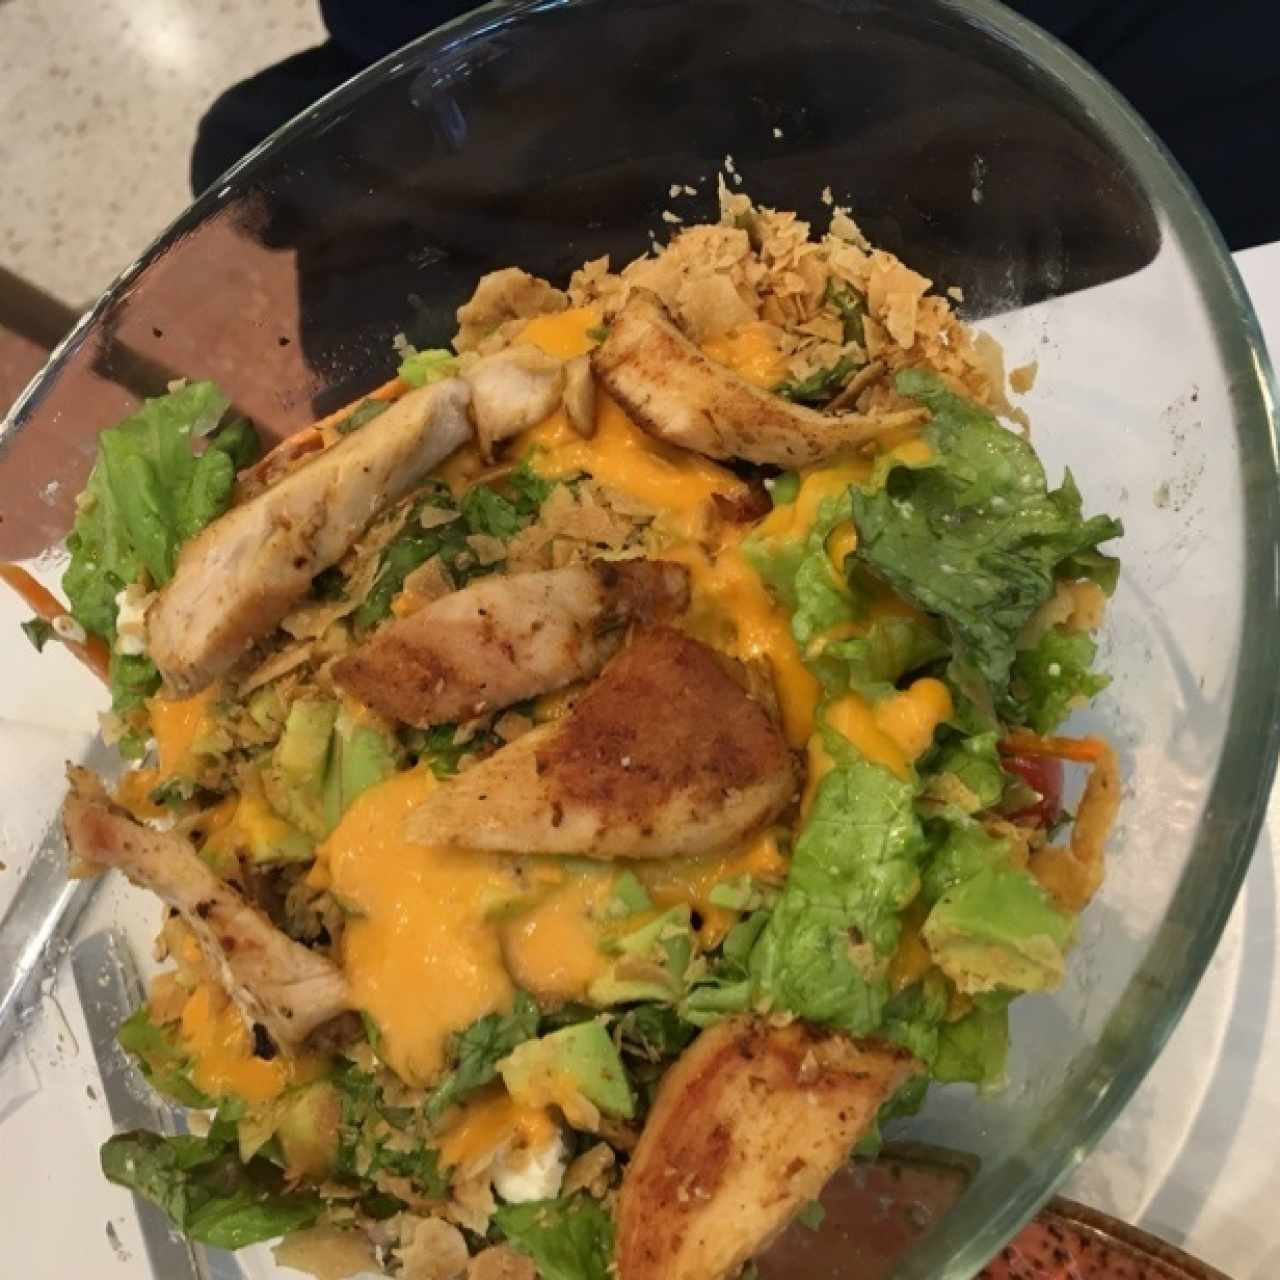 ensalada mexicana con pollo asado